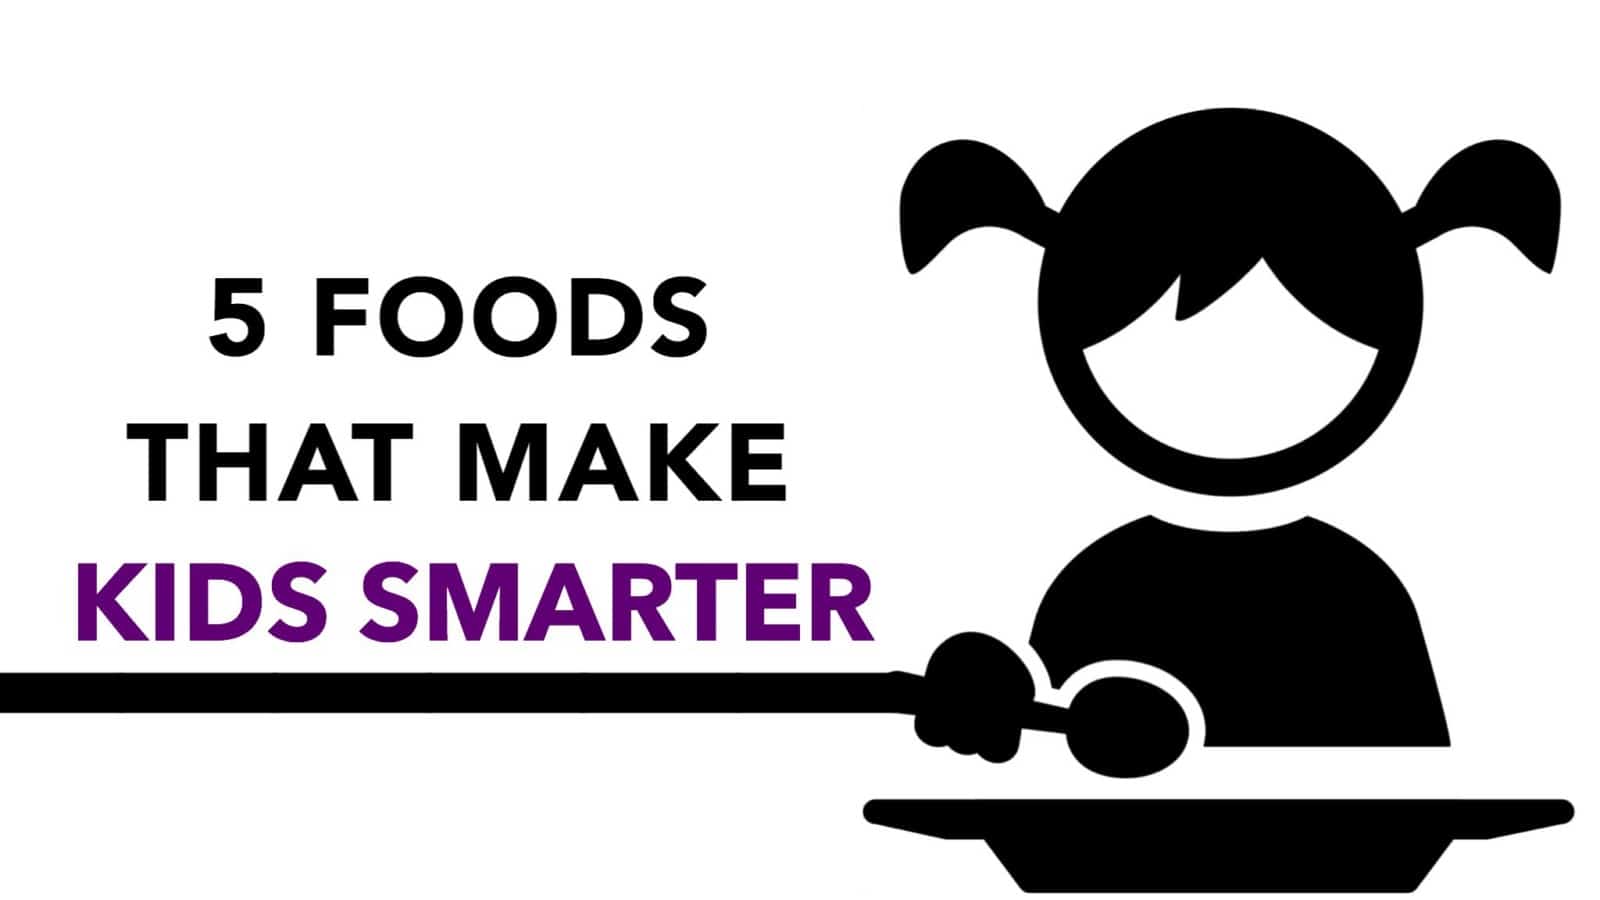 5 Foods That Make Kids Smarter